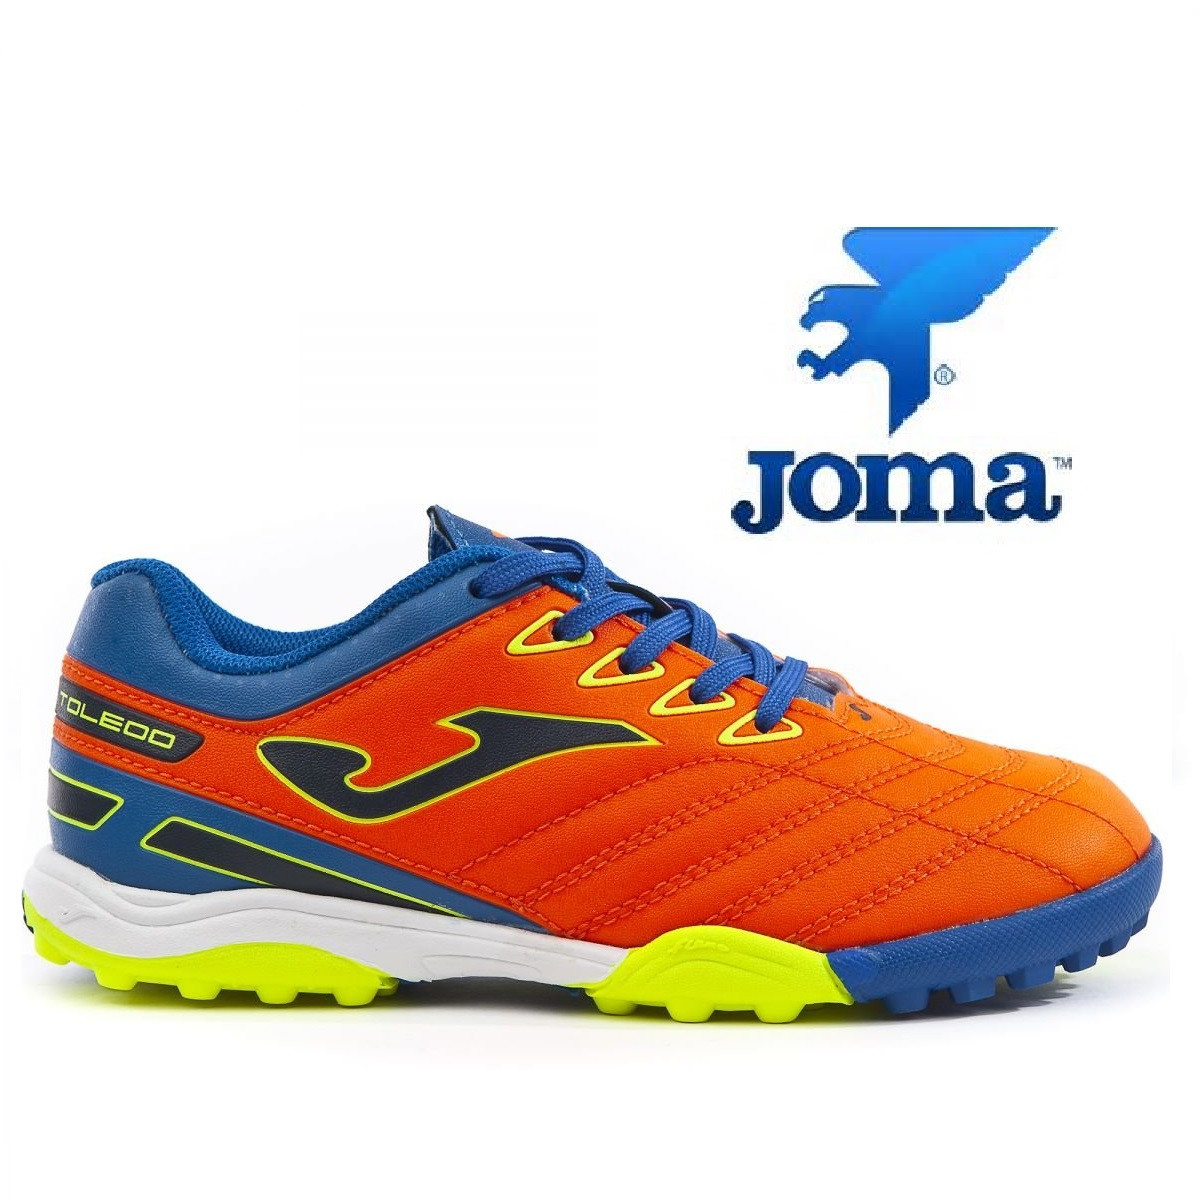 Детская футбольная обувь (многошиповки) Joma Toledo 808 PT Junior, цена 799  грн., купить в Киеве — Prom.ua (ID#815604131)